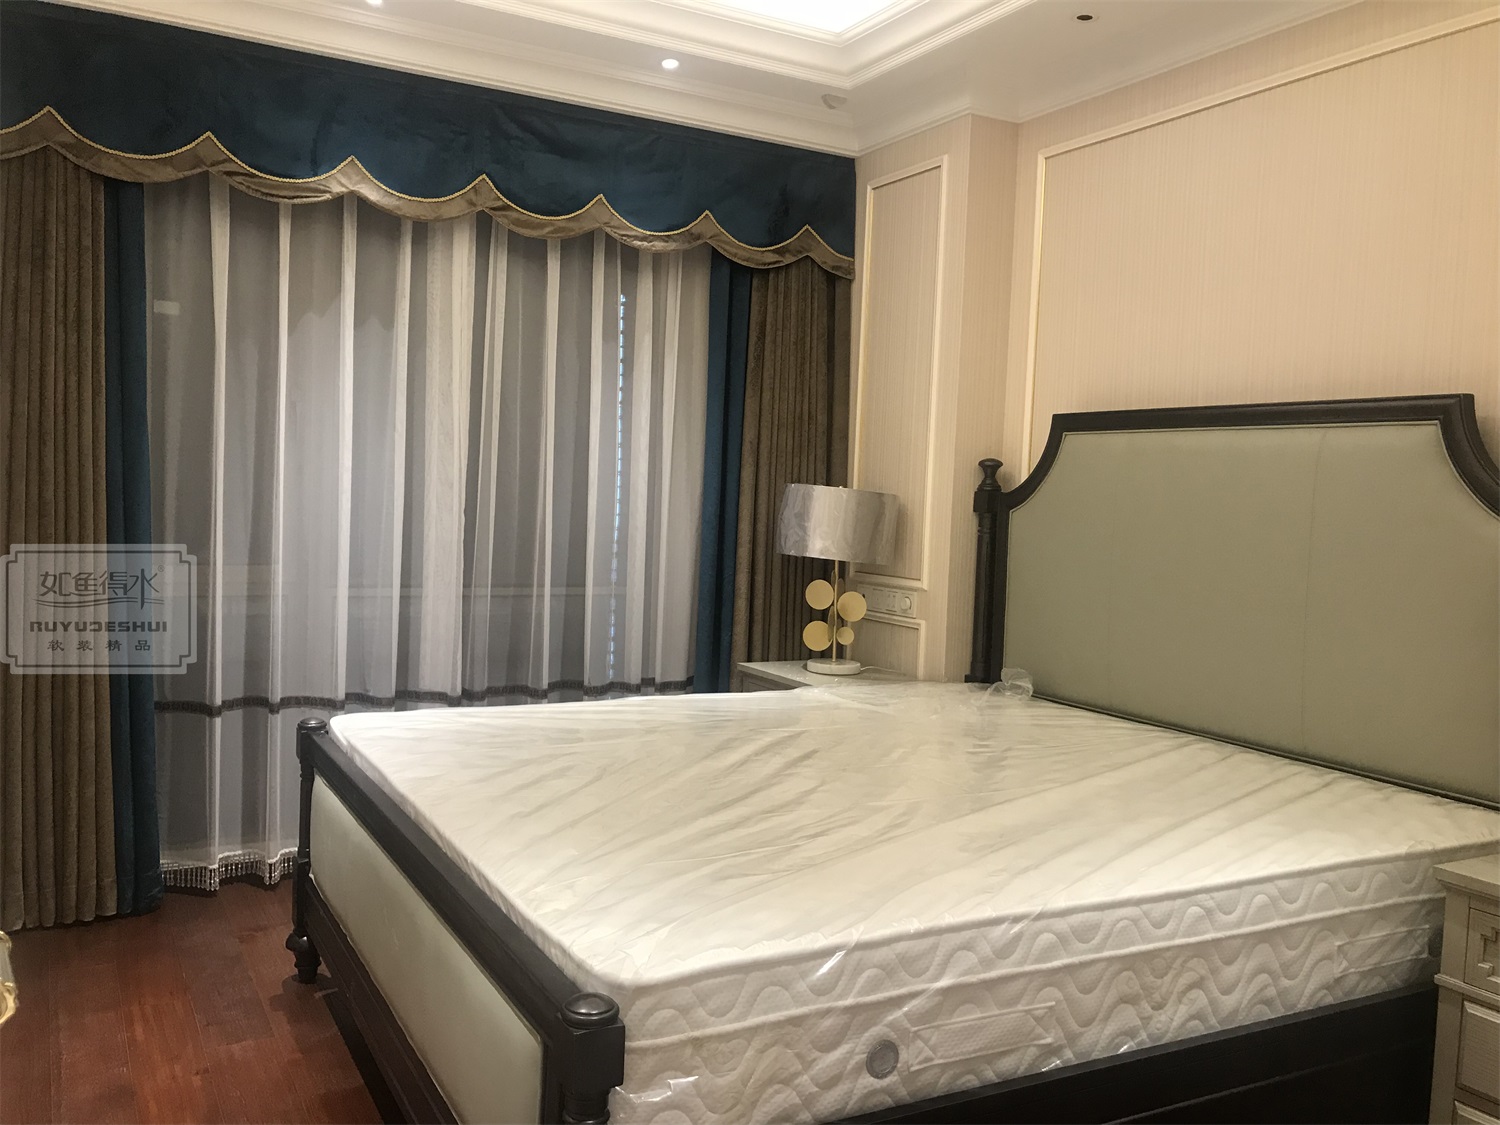 酒店窗帘工程案例---金海华丽嘉大酒店|工程案例|上海文宗缘商贸有限公司